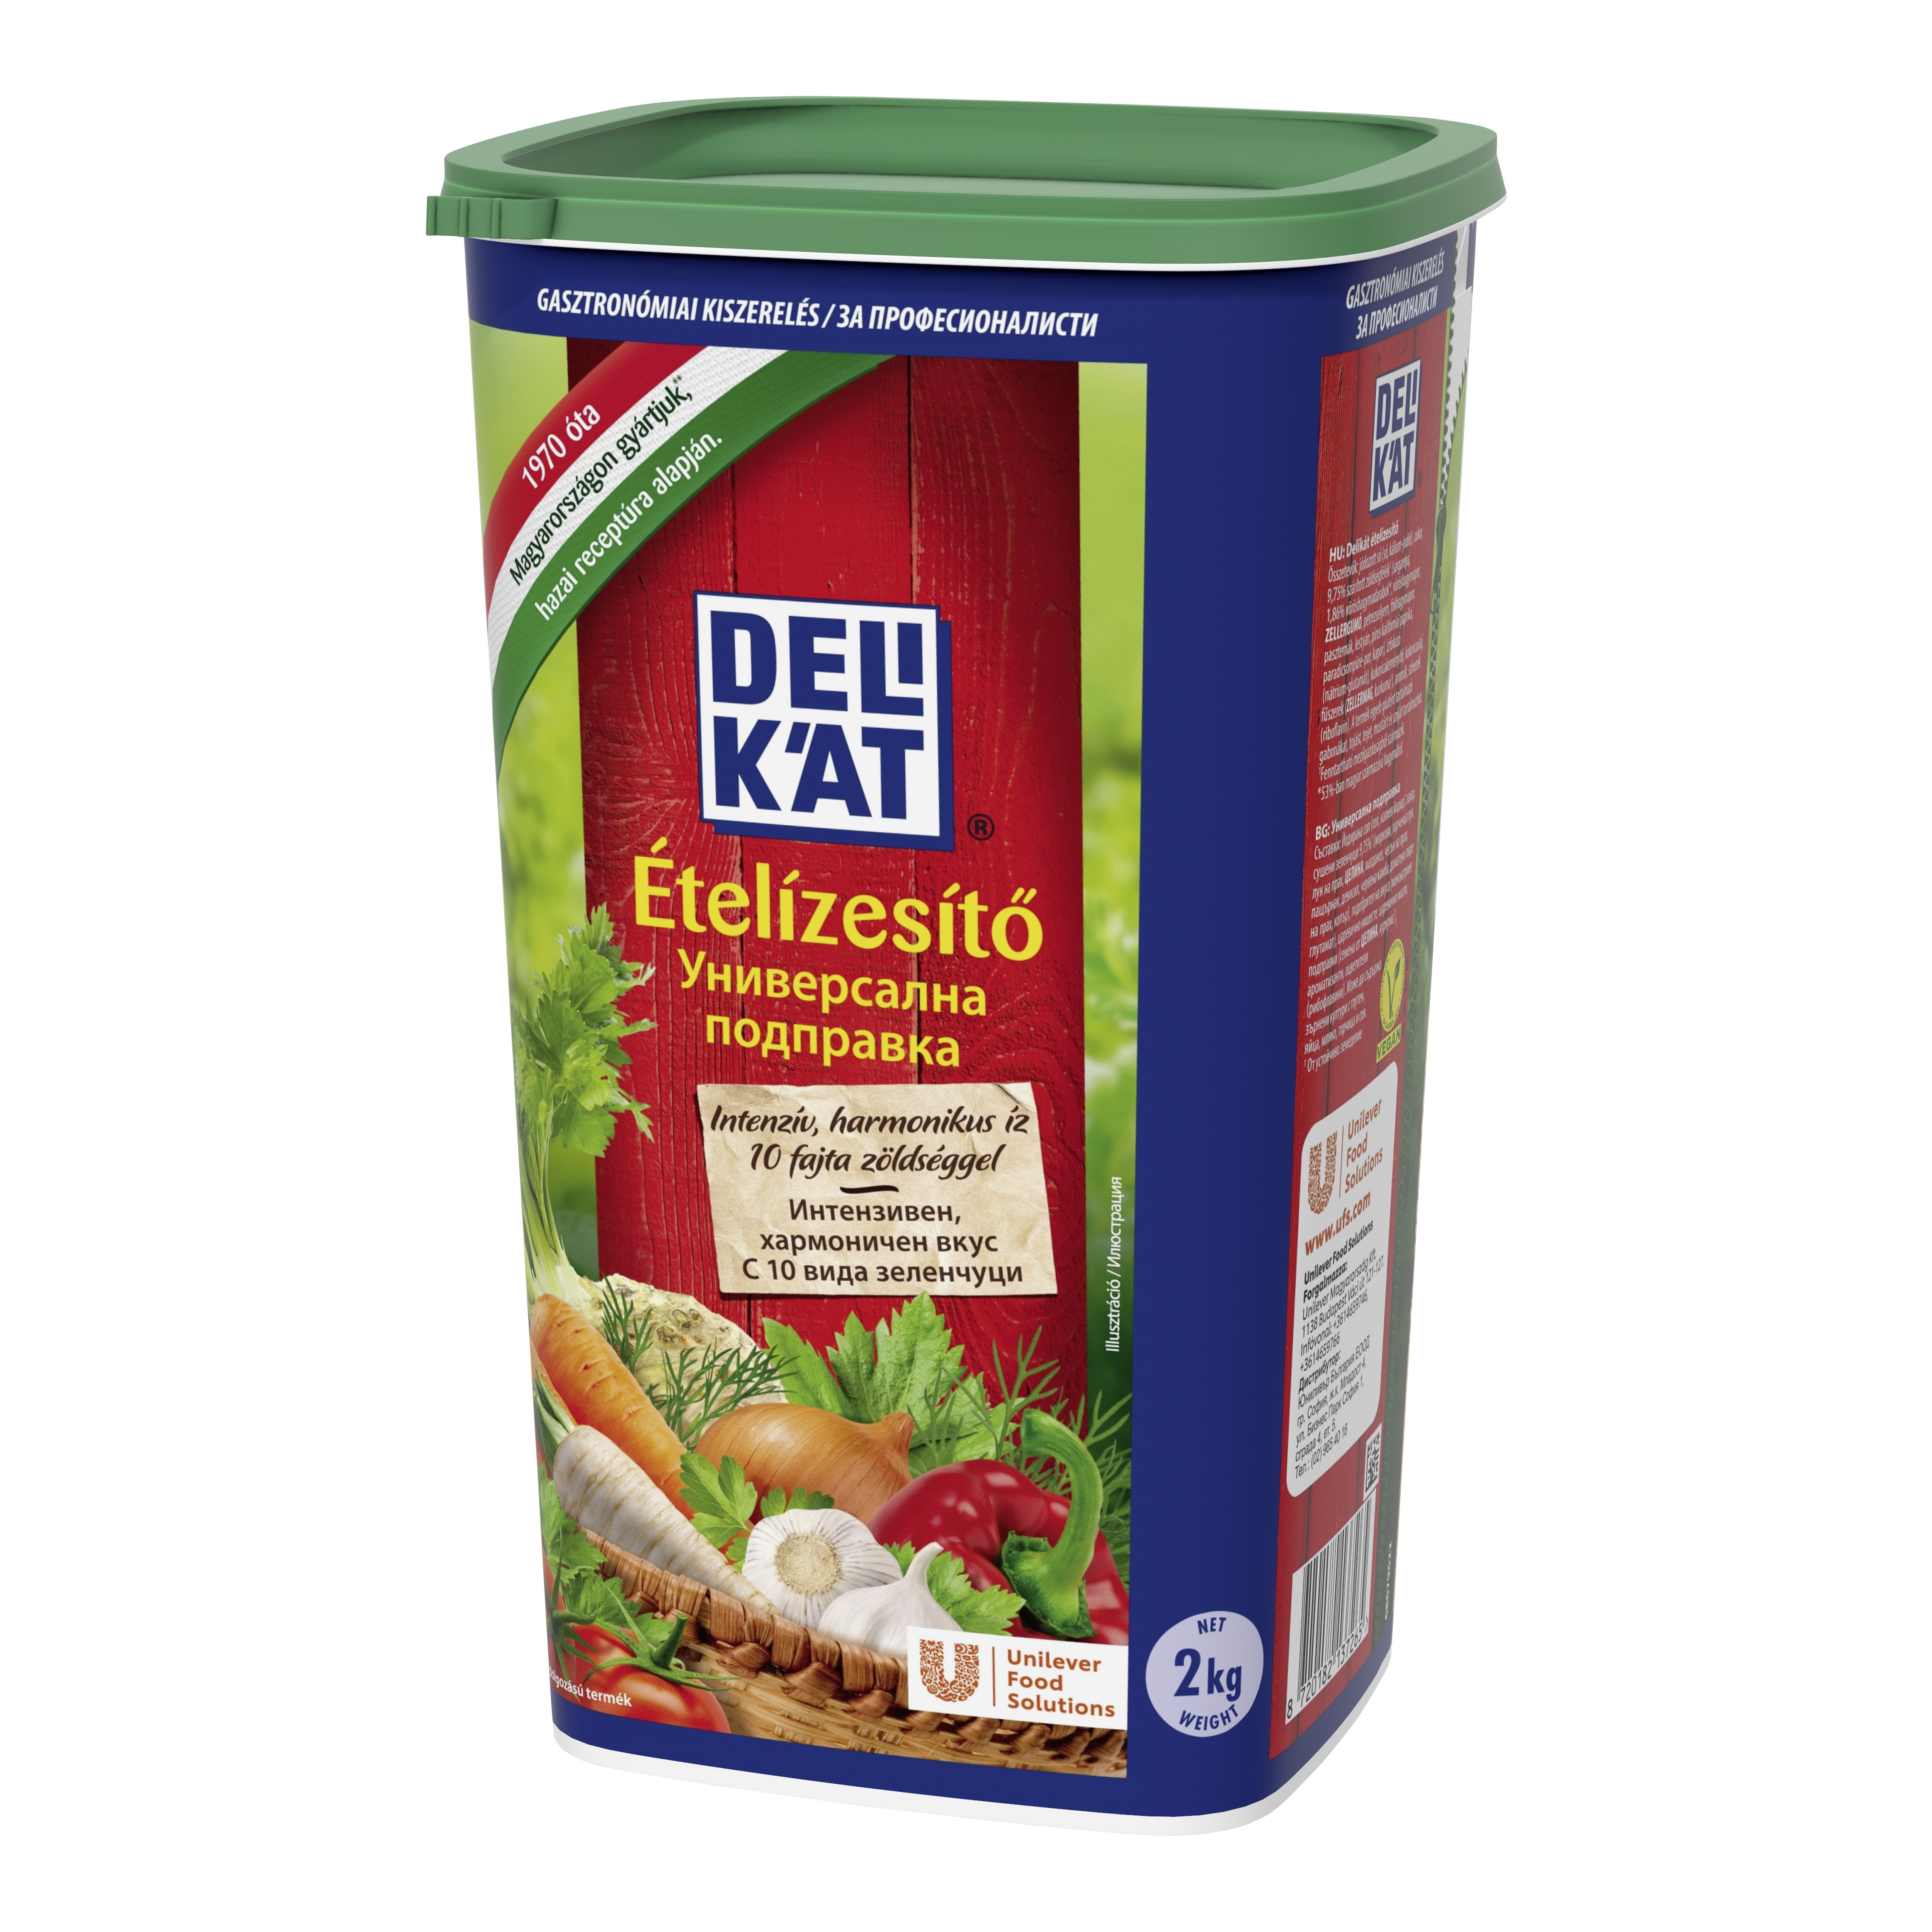 Knorr Delikat začinska mješavina 2 kg